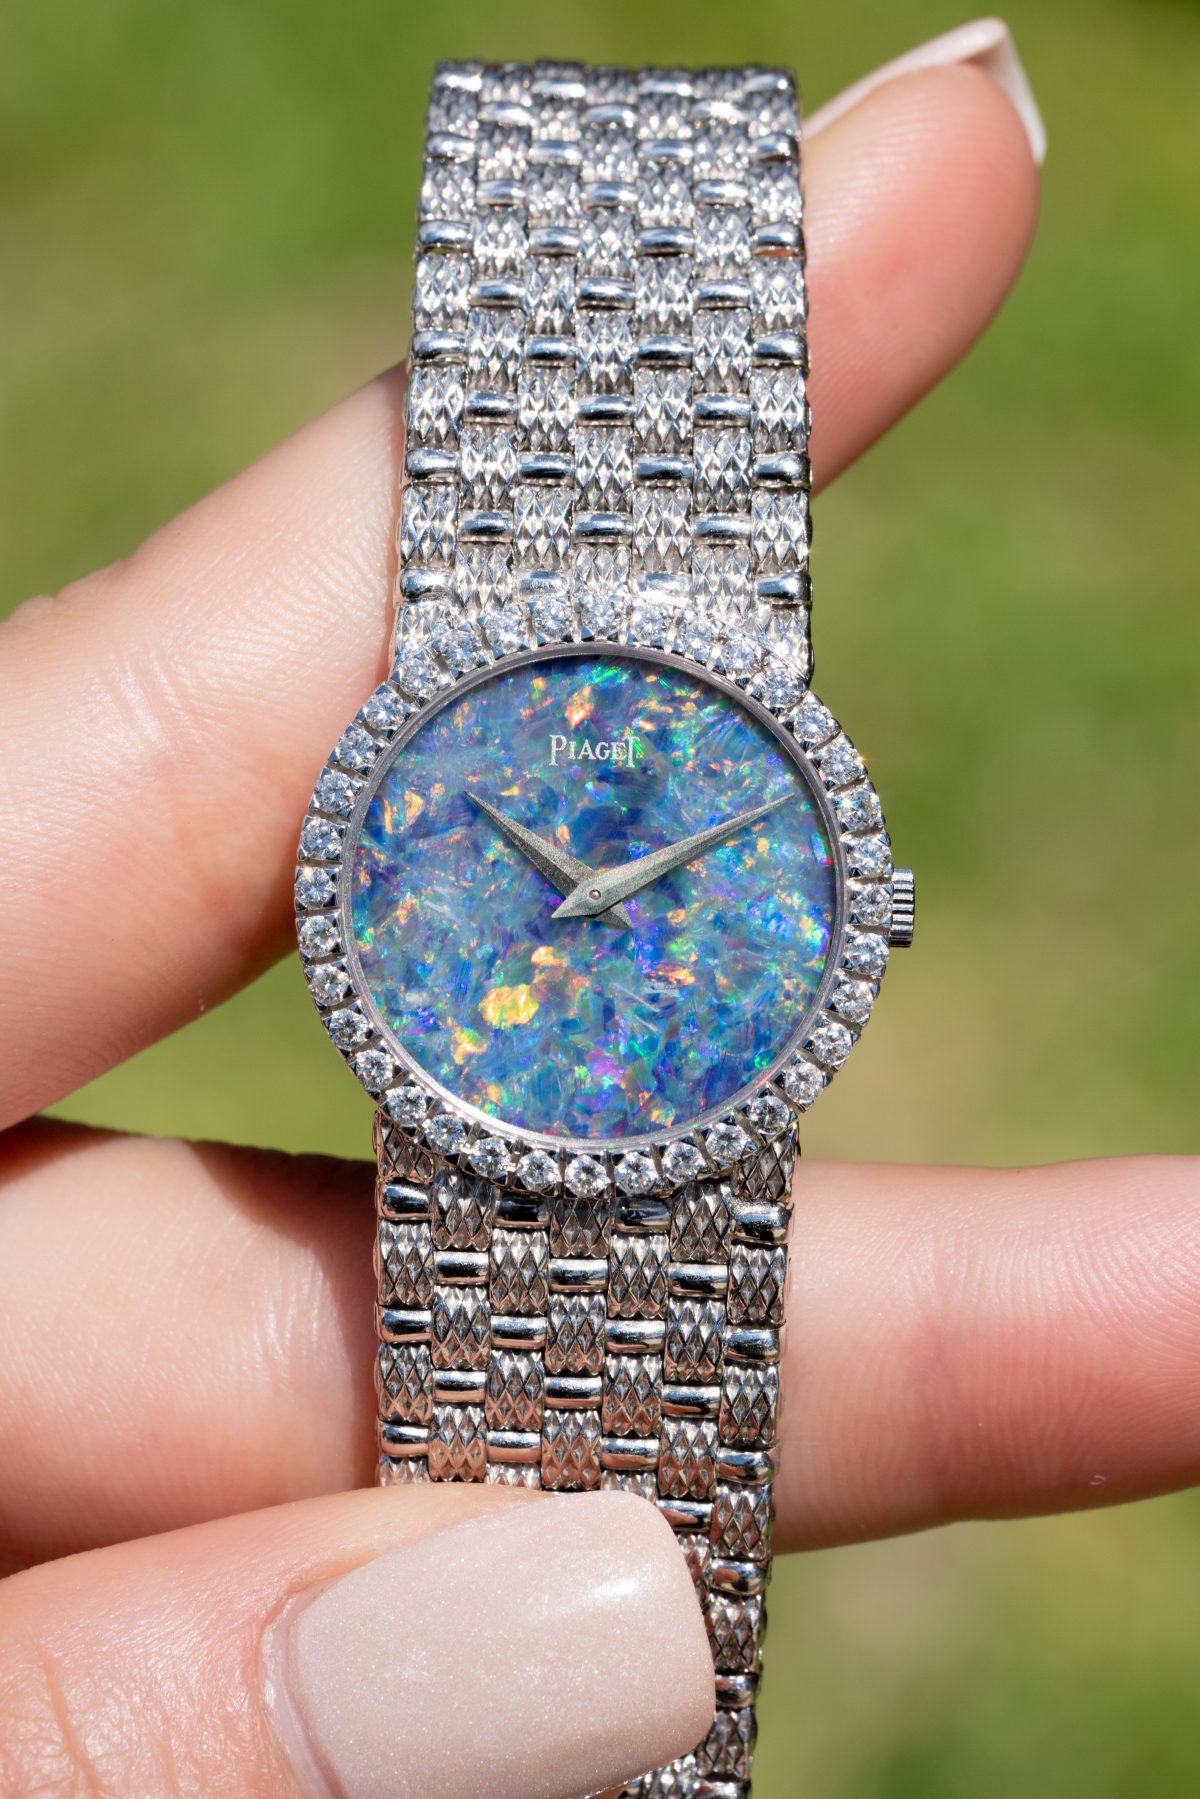 An opal dial Piaget watch